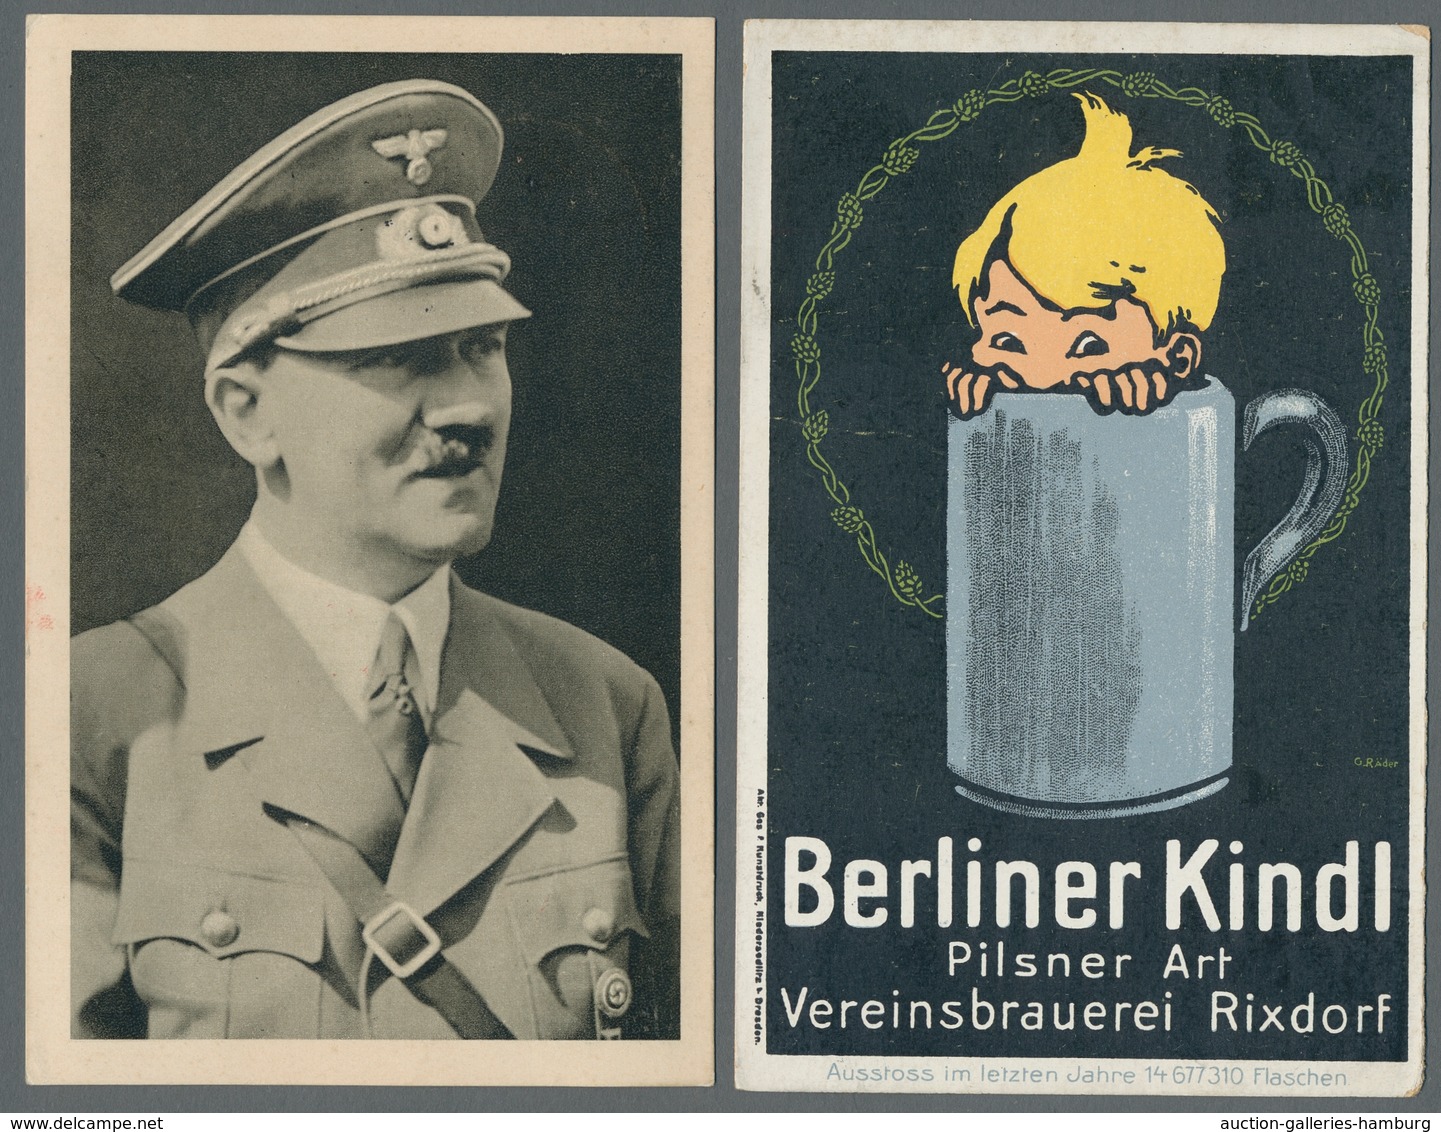 Deutsches Reich: 1874-1942, Bestand von über 70 Belegen mit u.a. 4 Wertbriefen mit Krone/Adler-Frank